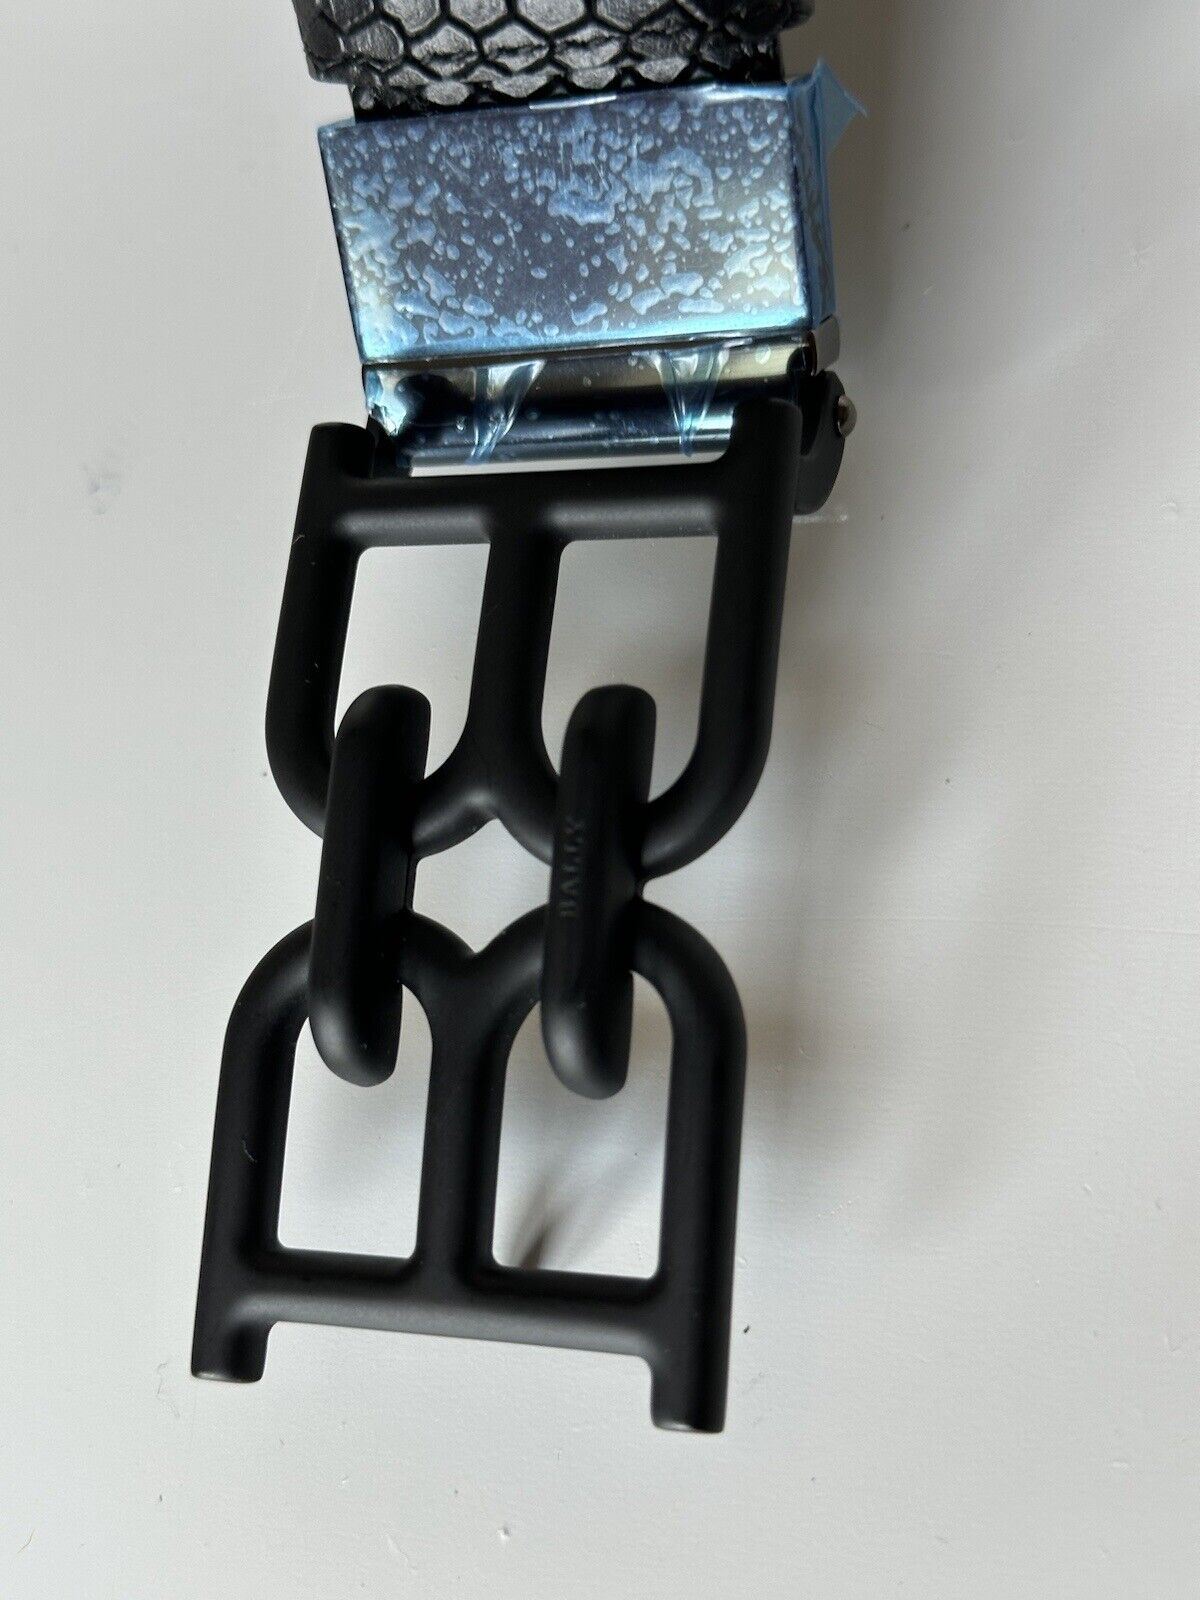 Мужской черный ремень с двухсторонней цепочкой Bally NWT, 450 долларов США, размер 44/110, производство Италия 